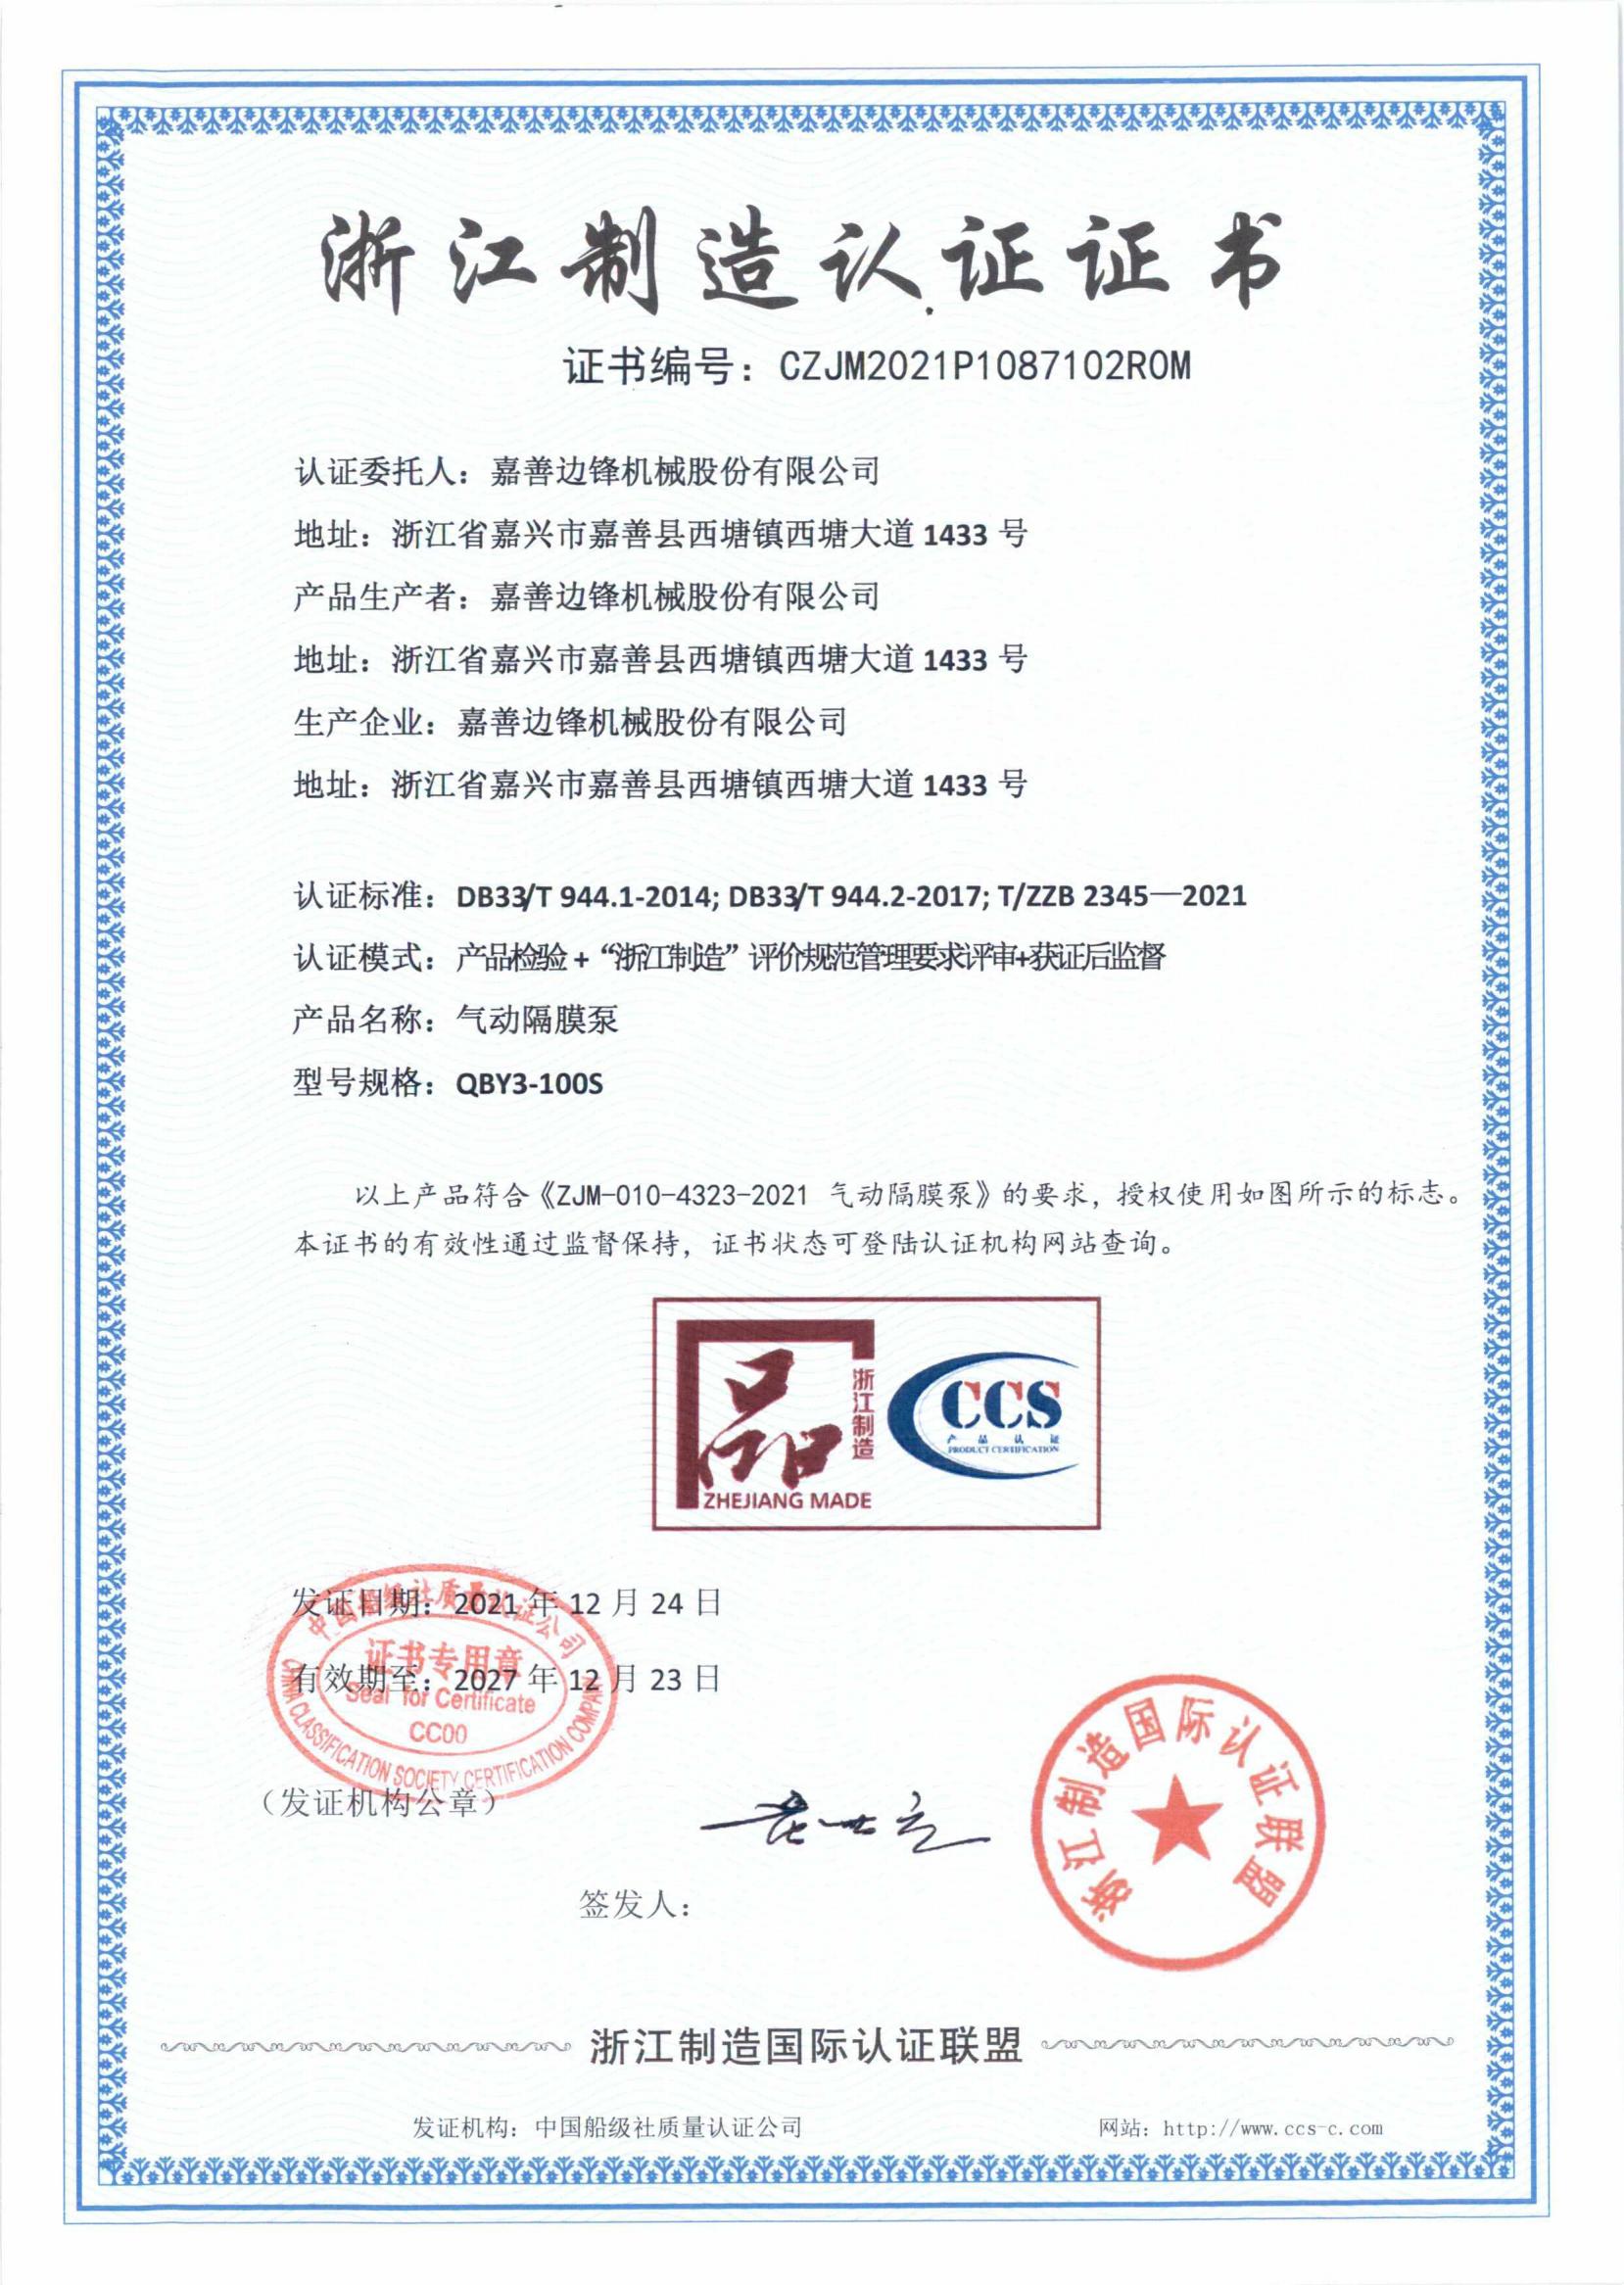 隔膜泵认证证书